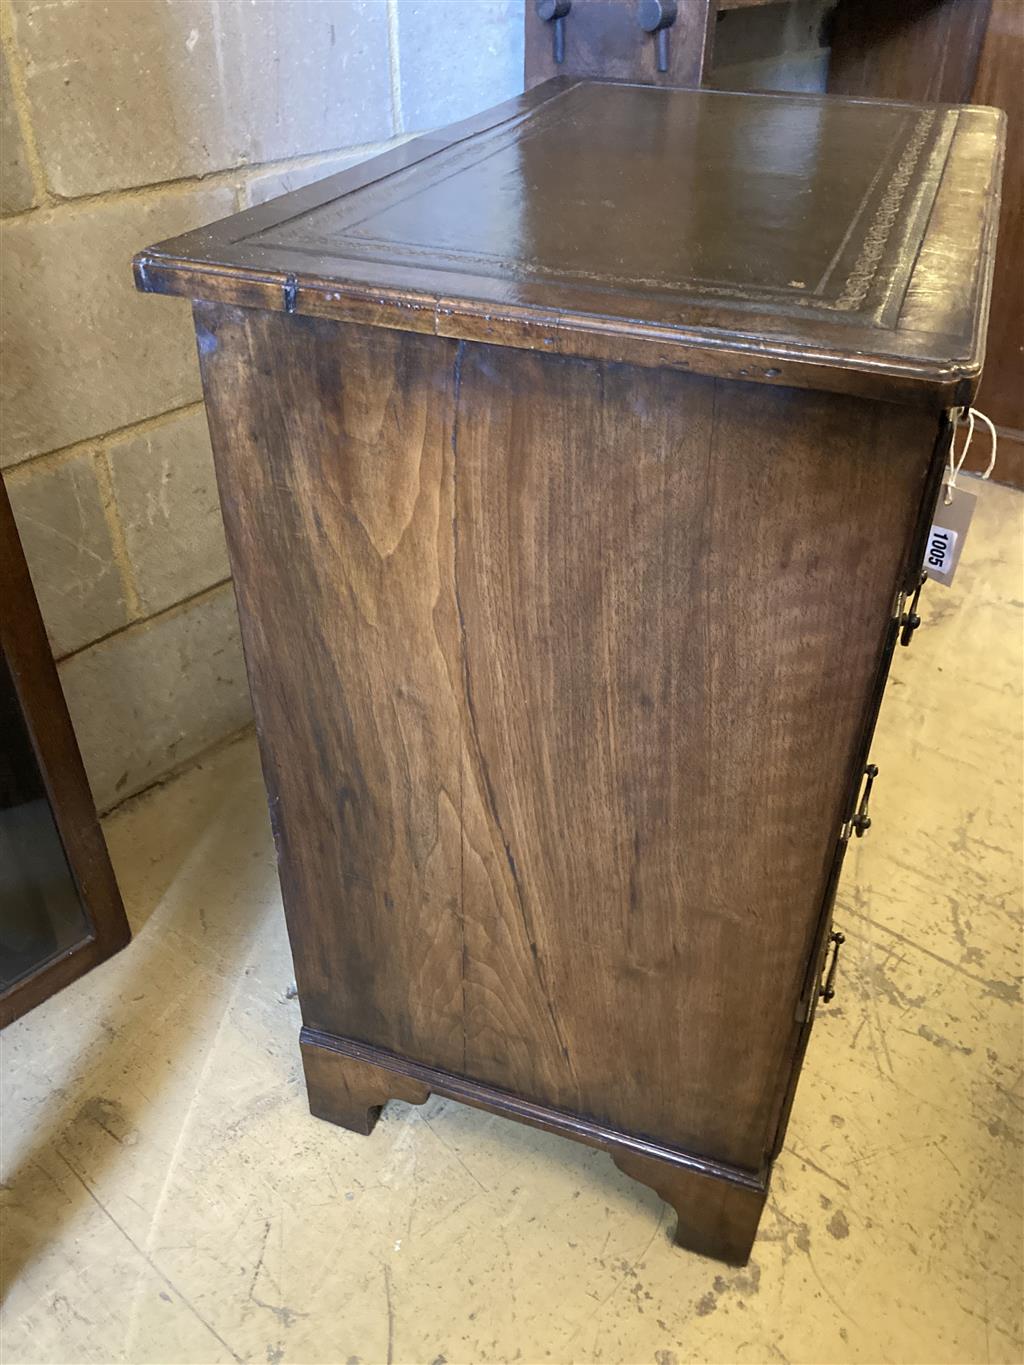 A Queen Anne style walnut kneehole desk, width 74cm, depth 44cm, height 77cm